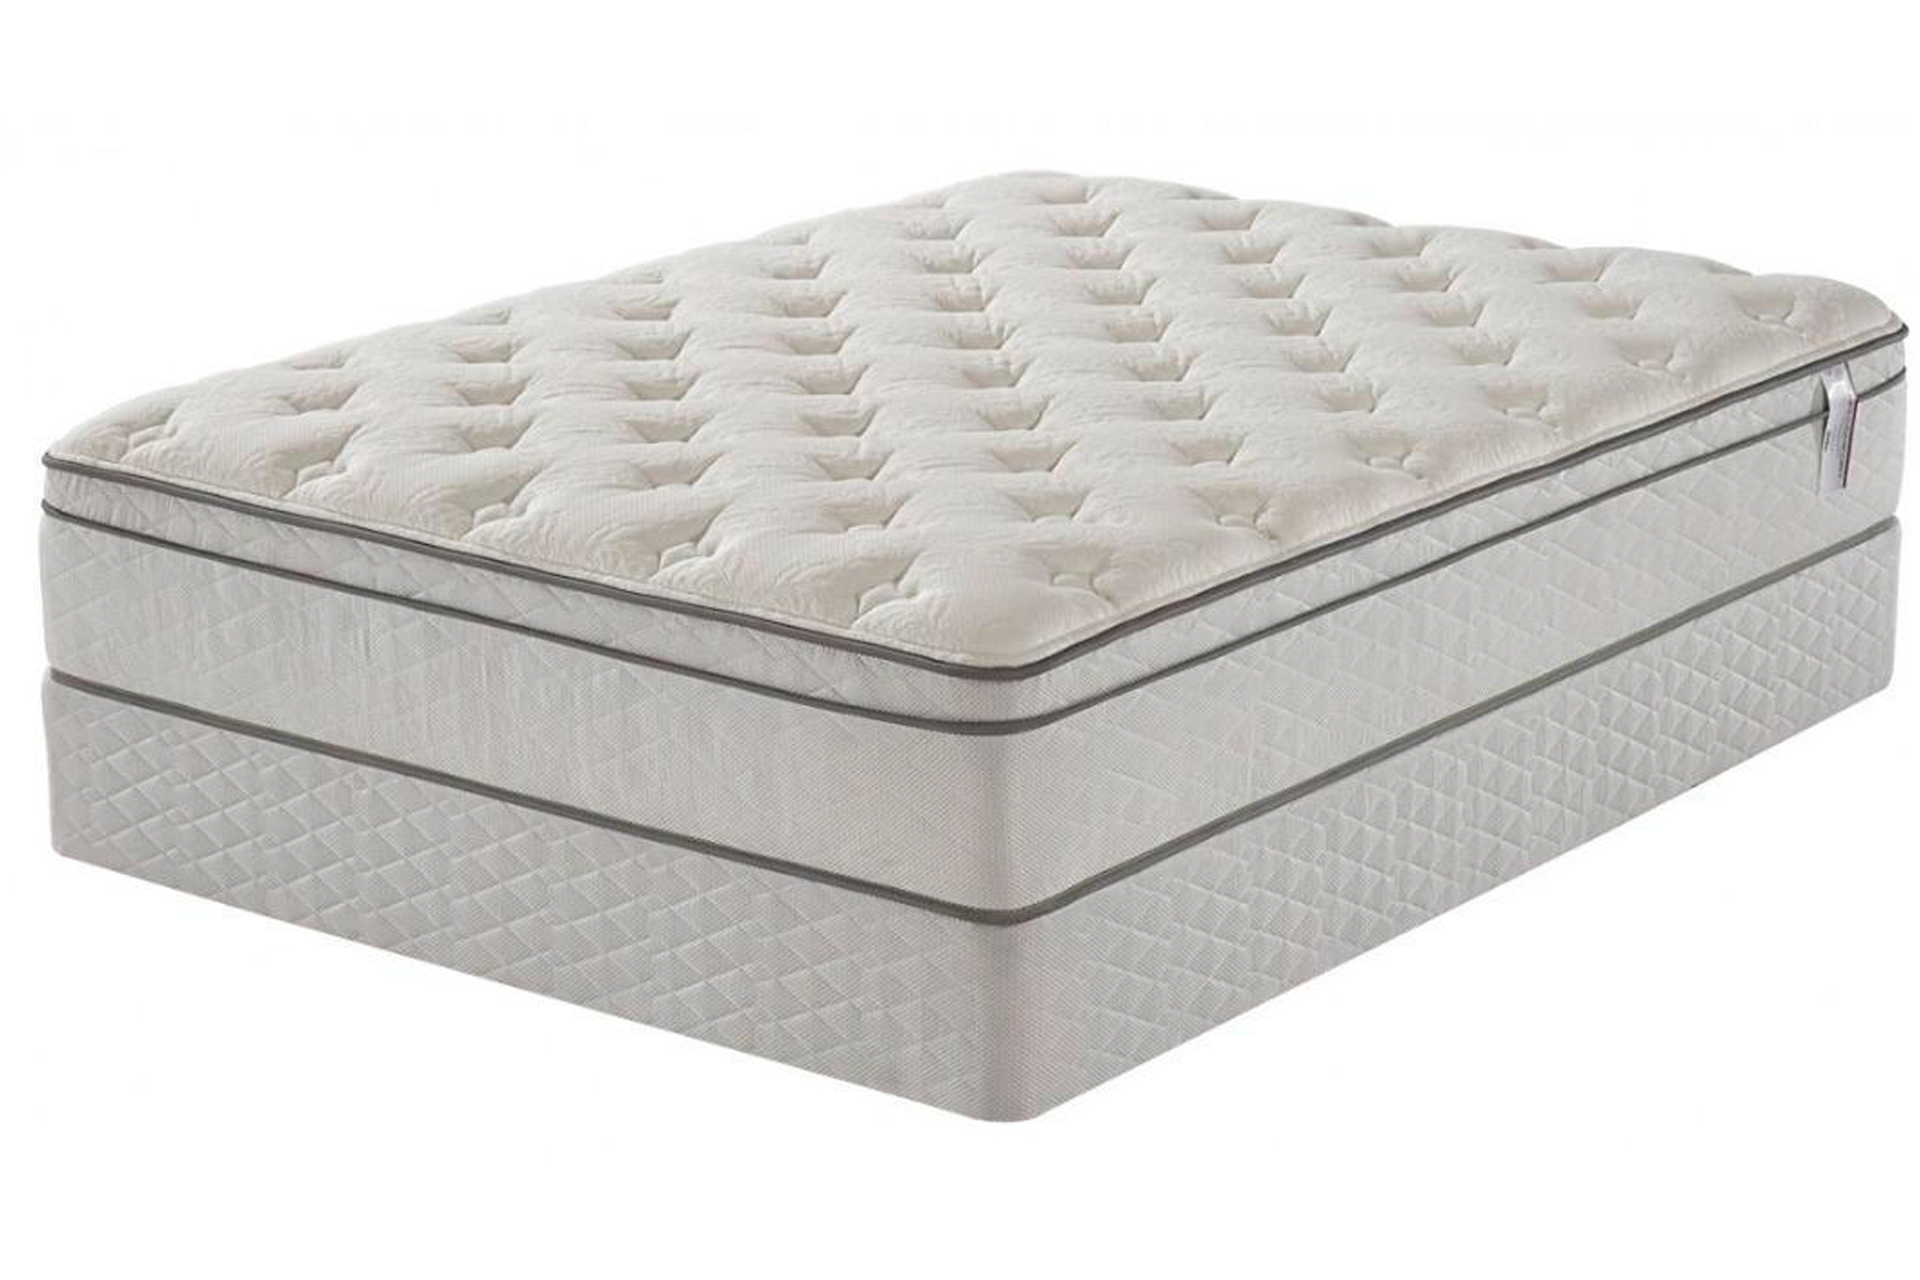 queen size mattress pillow top covers